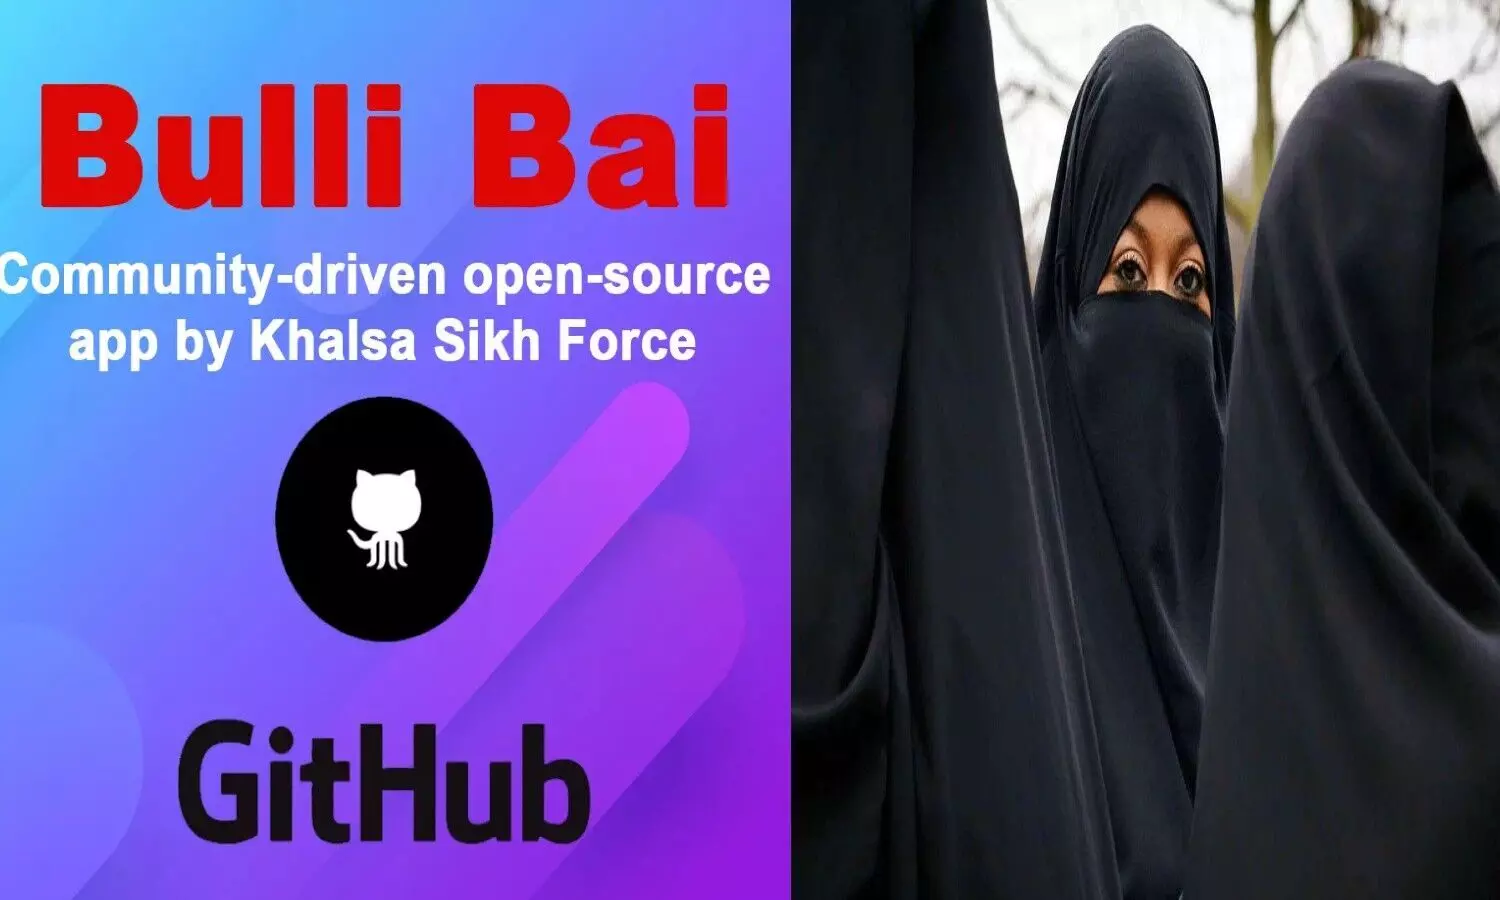 मुस्लिम महिलाओं से अभद्रता: सोशल मीडिया की इस एप पर शेयर की जा रही फोटोज, अभद्रता से जनता में बढ़ता आक्रोश